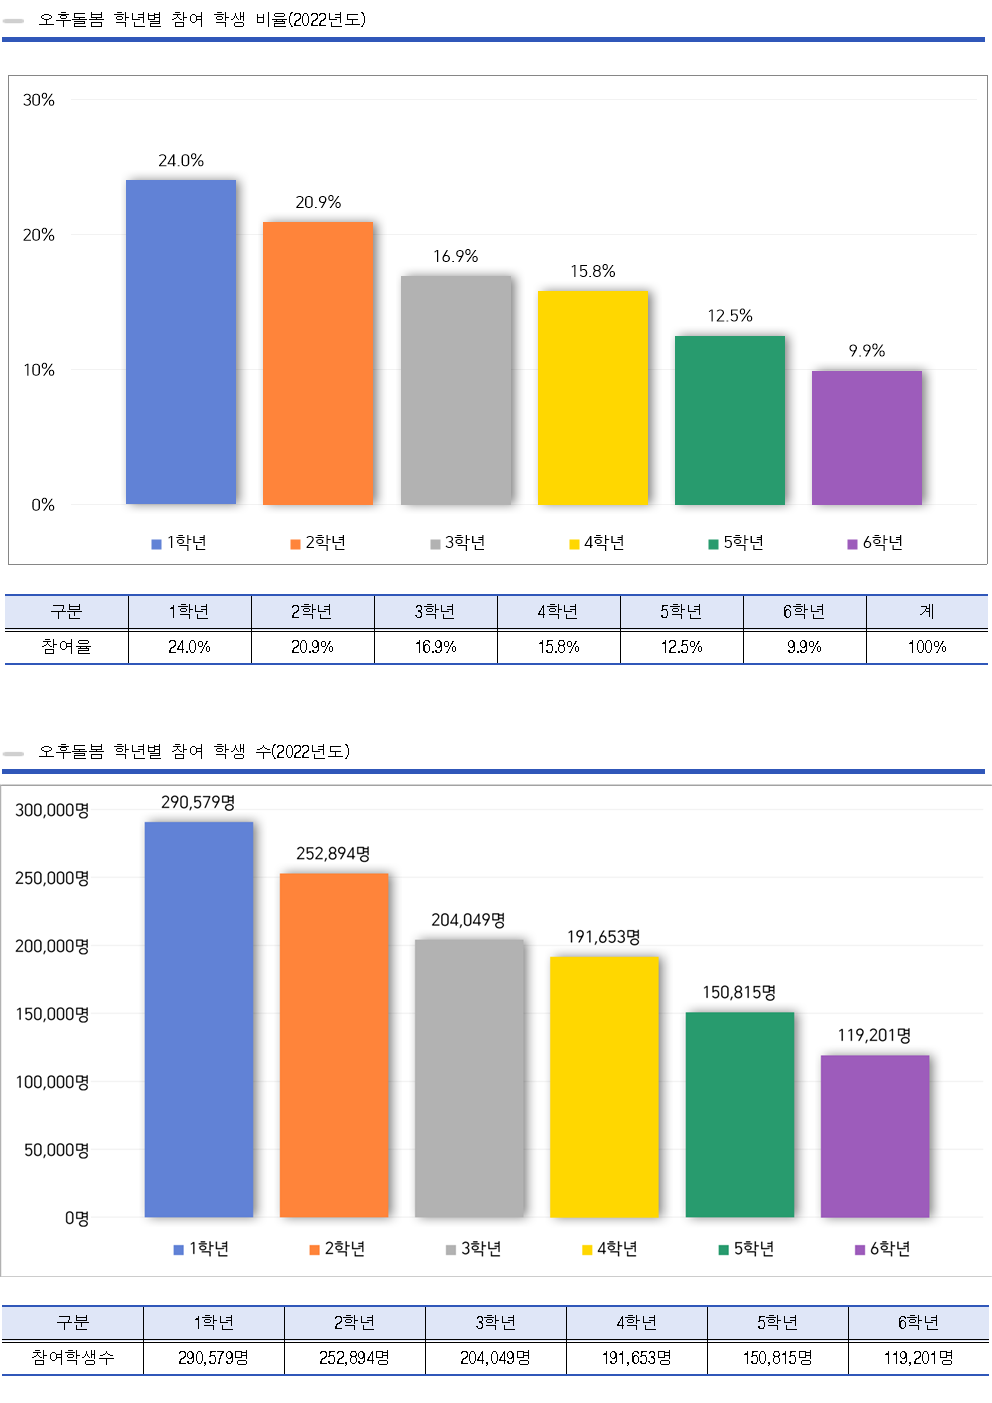 오후돌봄 학년별 참여 학생 비율 (2019년도)